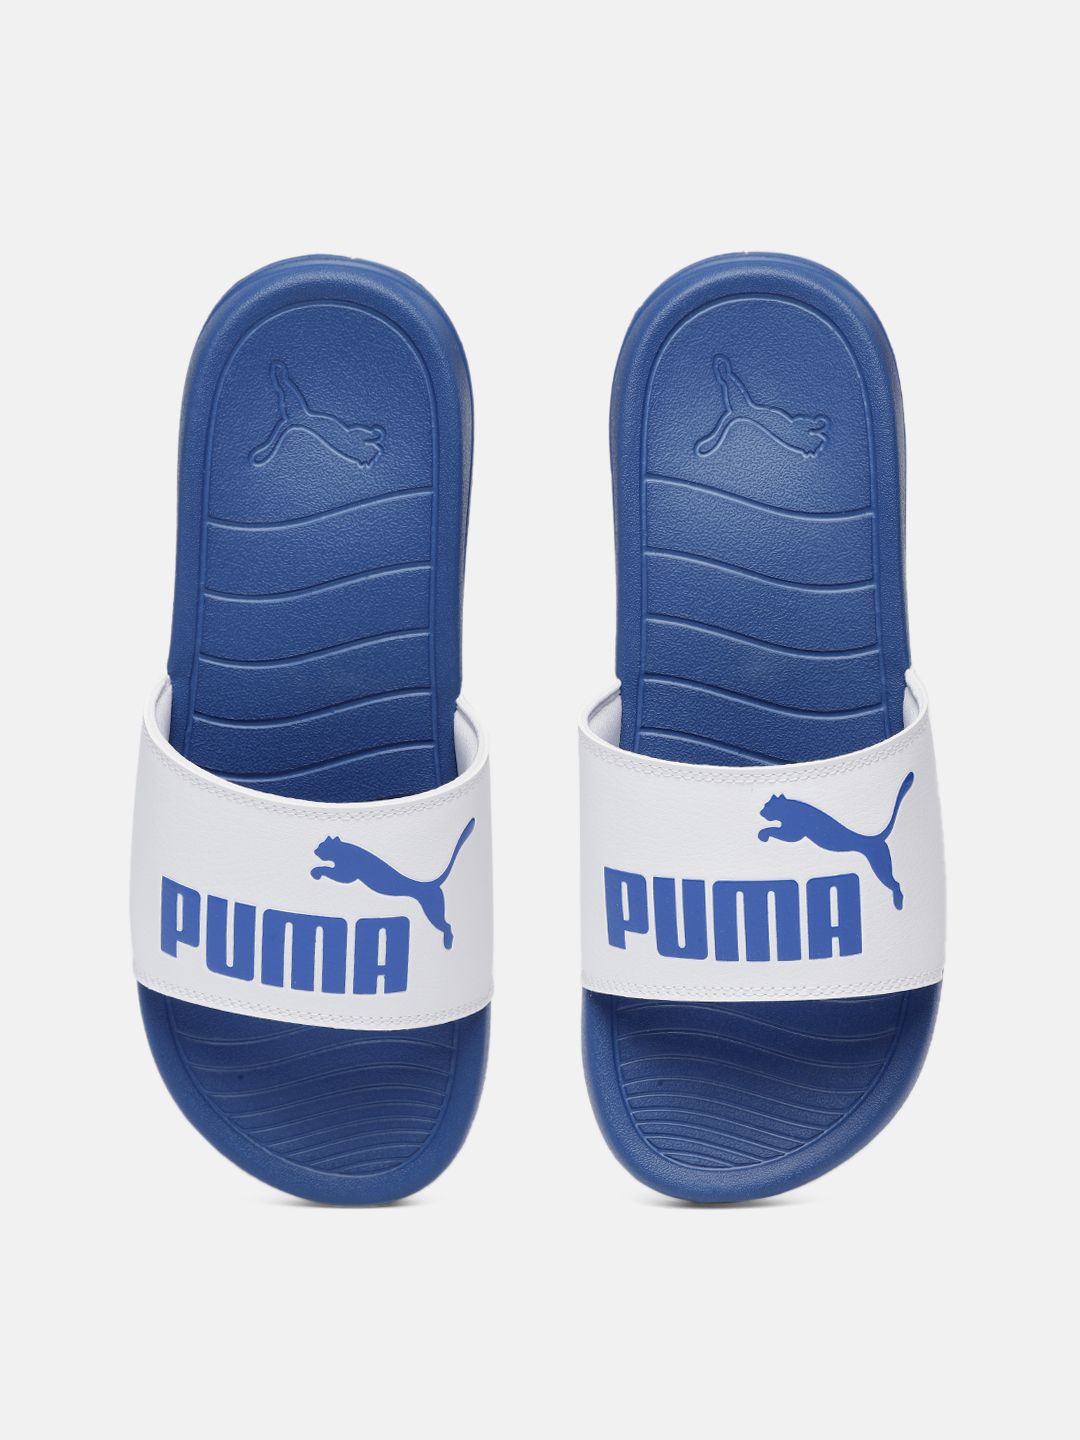 Puma Unisex Blue & White Printed Popcat 20 Sliders Price in India